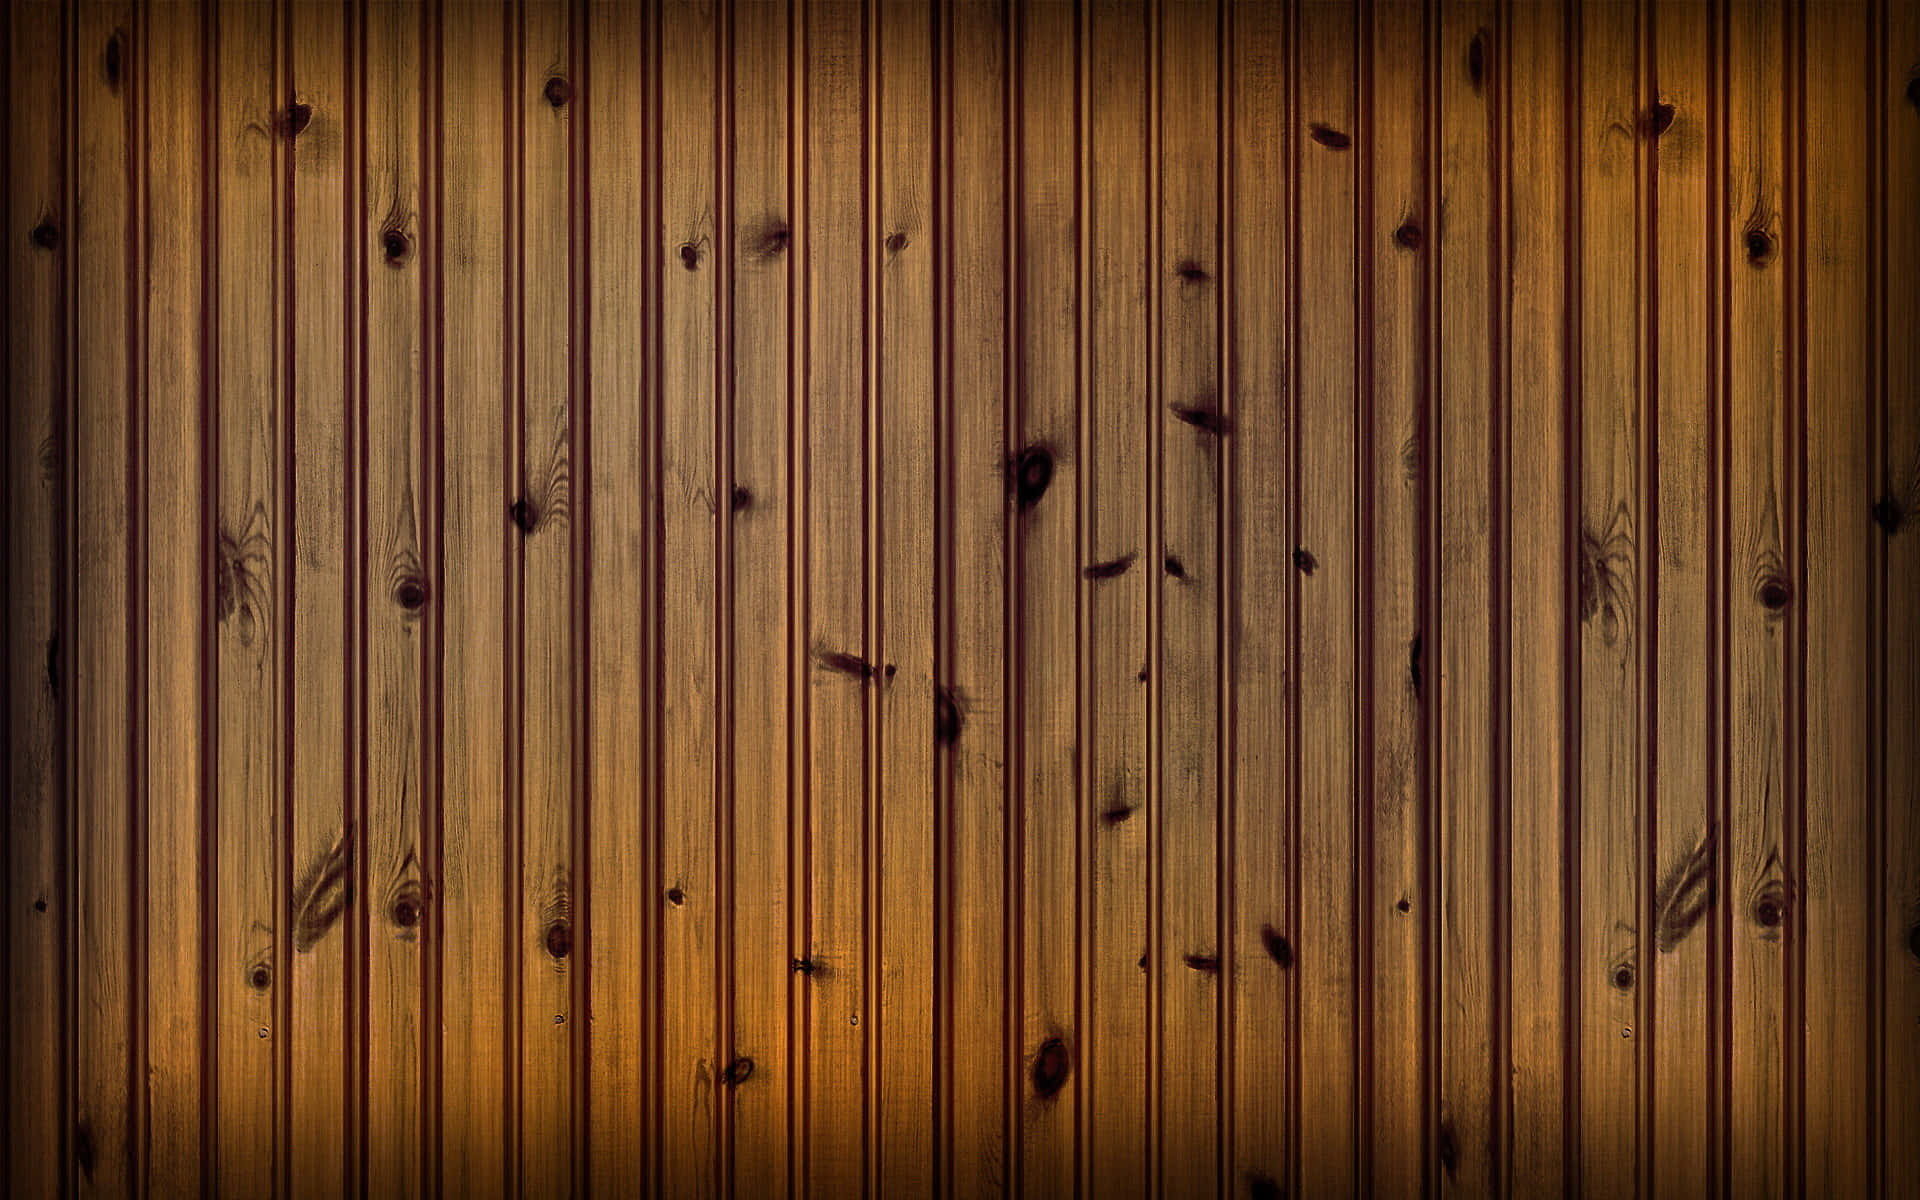 Exquisite Dark Bamboo Wooden Background Wallpaper